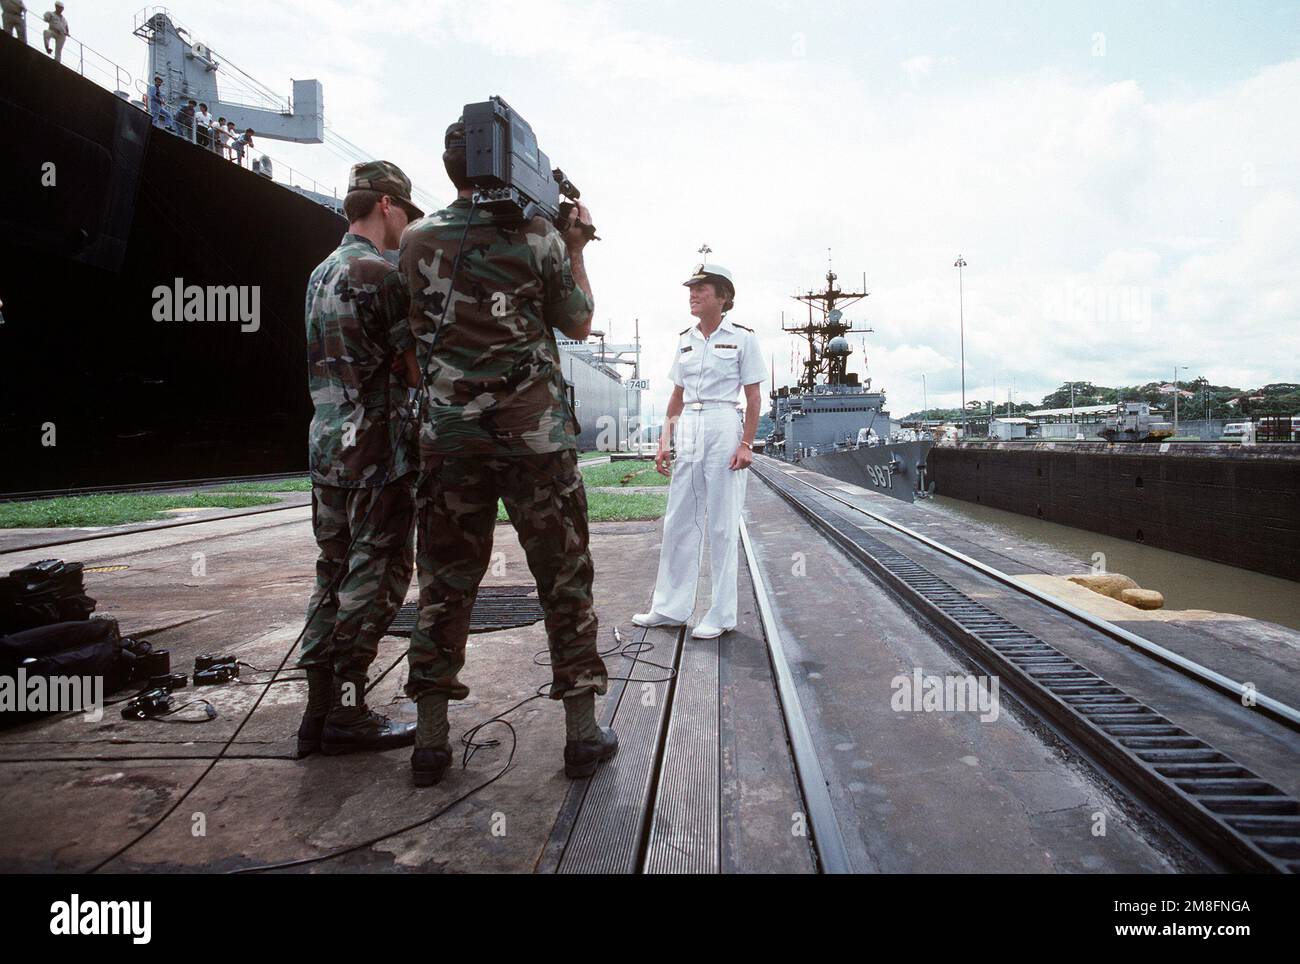 Un team di media documenta il passaggio del cacciatorpediniere USS o'BANNON (DD-987) attraverso le chiuse di Gatun mentre transita nel canale di Panama durante Unitas XXXII, un esercizio combinato che coinvolge le forze navali degli Stati Uniti e nove nazioni sudamericane. Nazione: Panama (PAN) Foto Stock